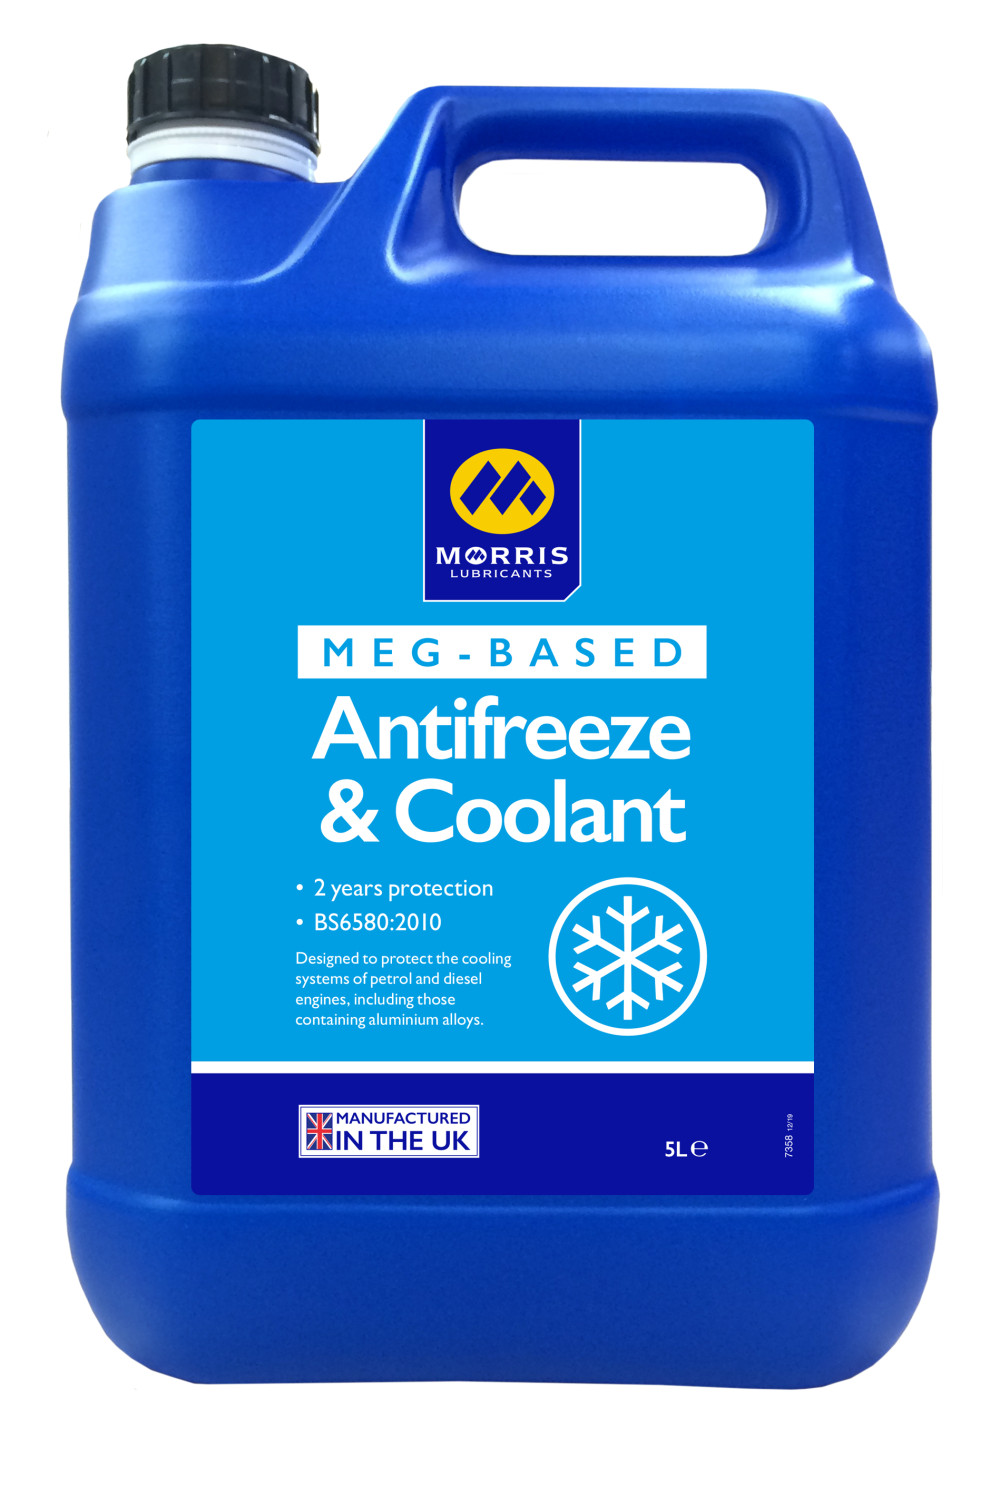 MEG-Based Antifreeze and Coolant